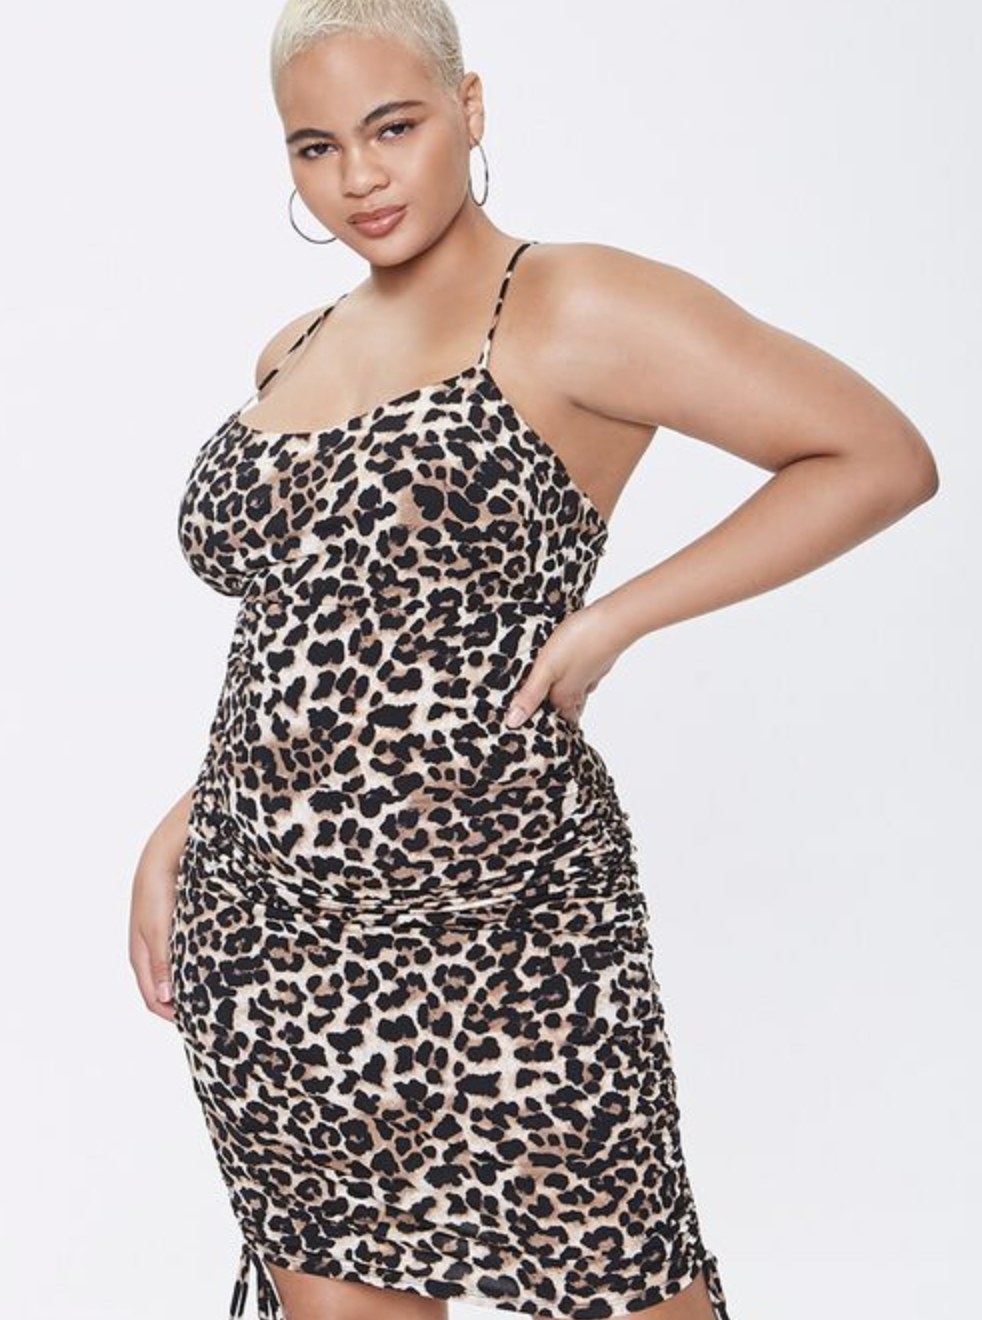 Model is wearing a leopard print dress